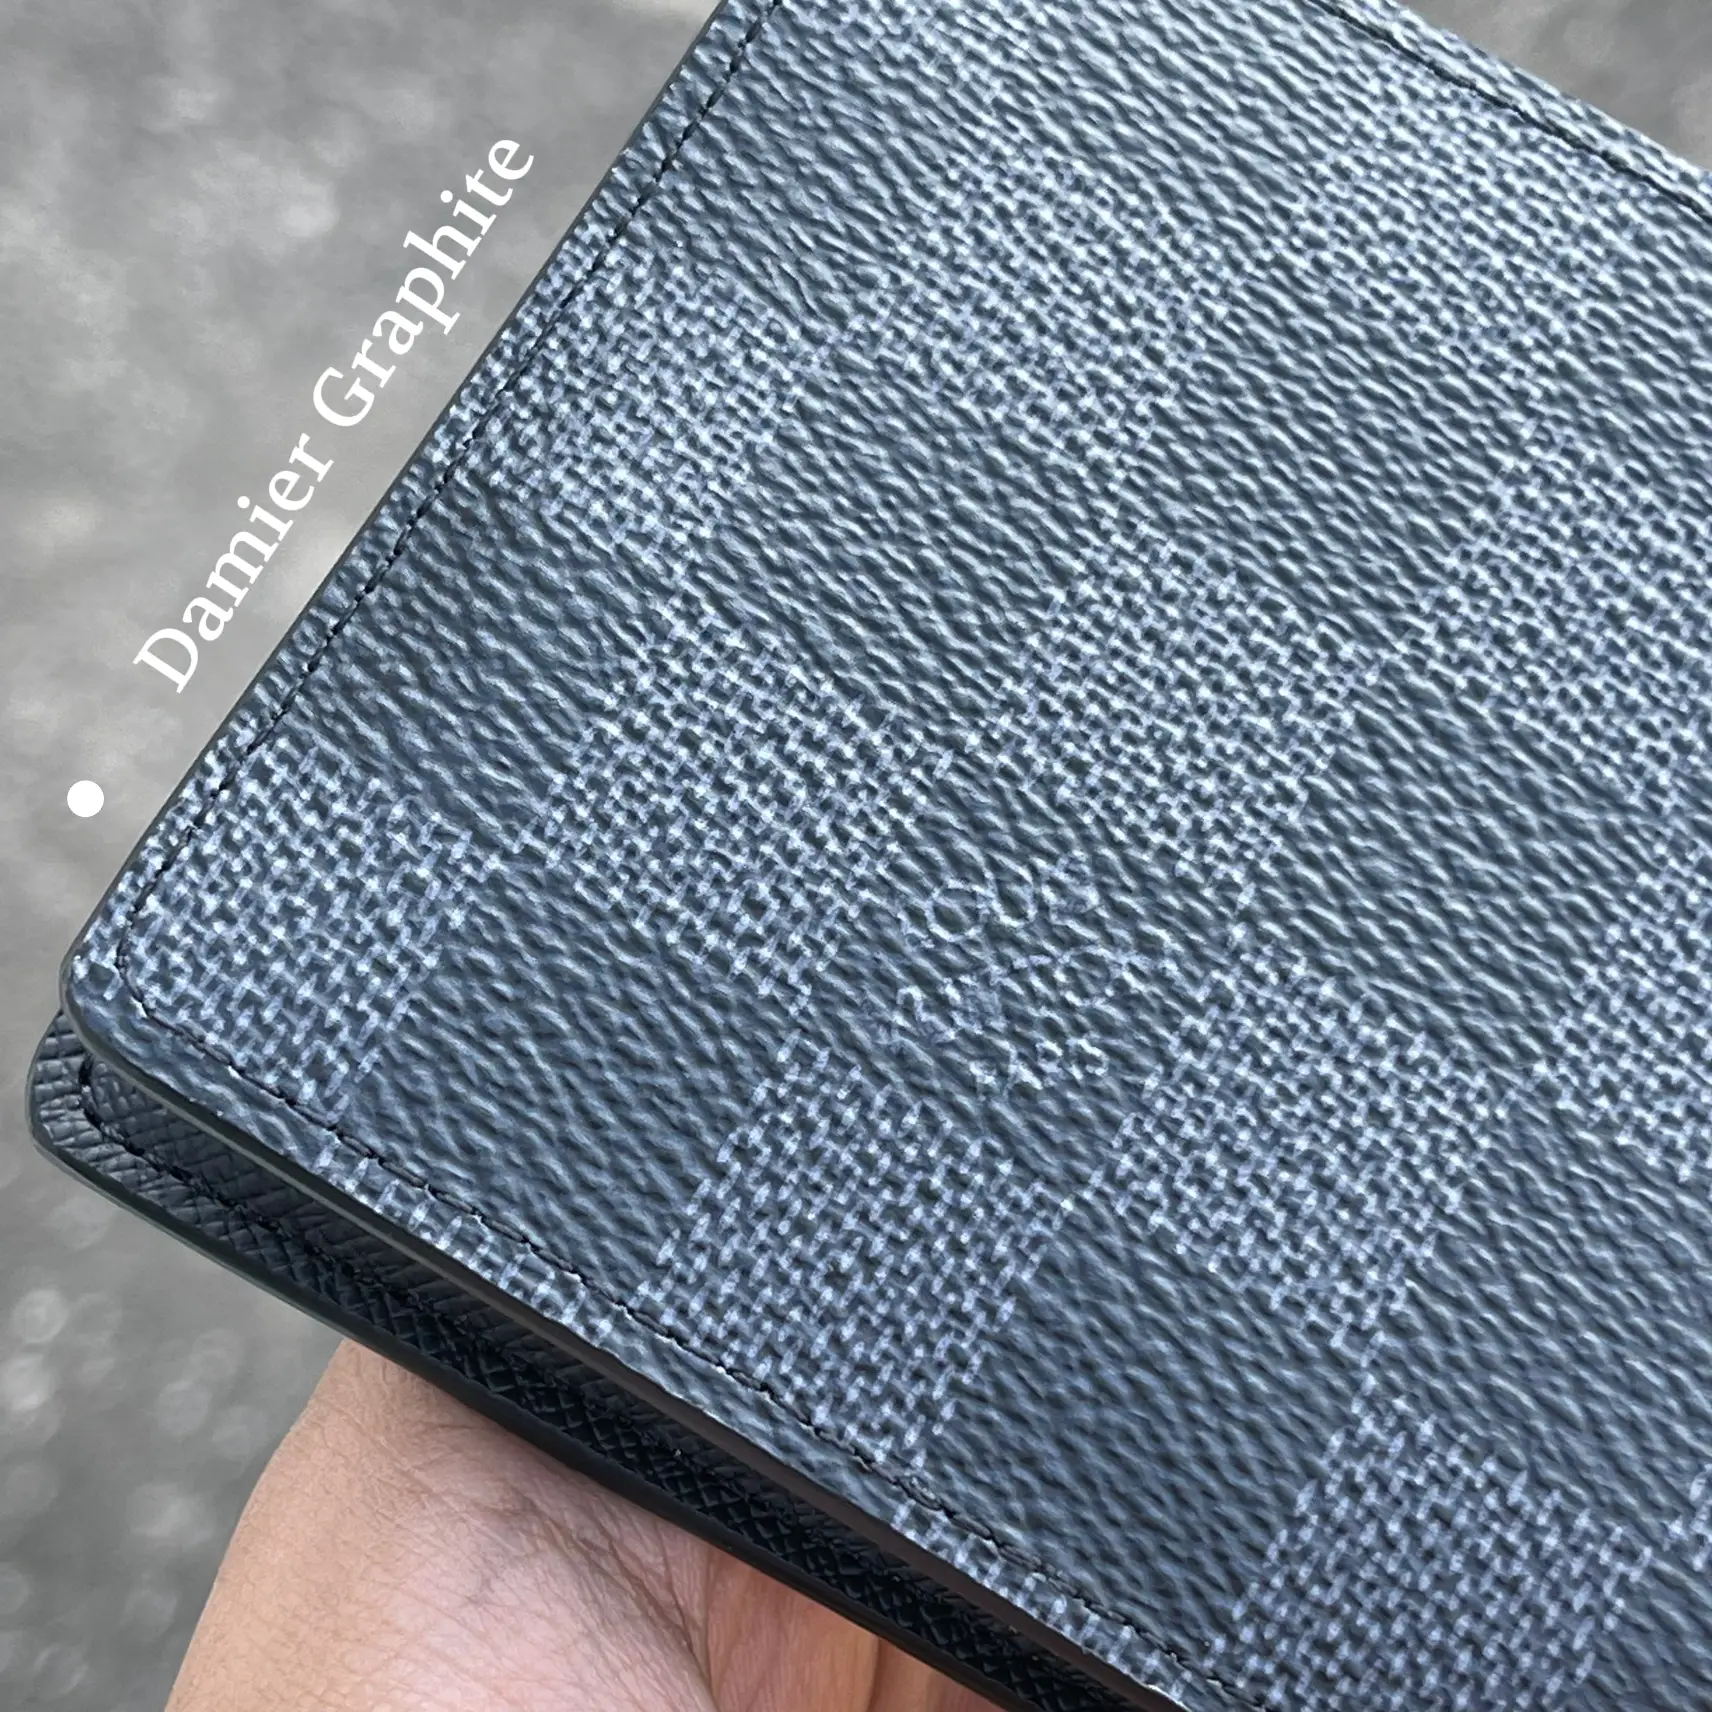 Louis Vuitton Damier Graphite Multiple Wallet Review 